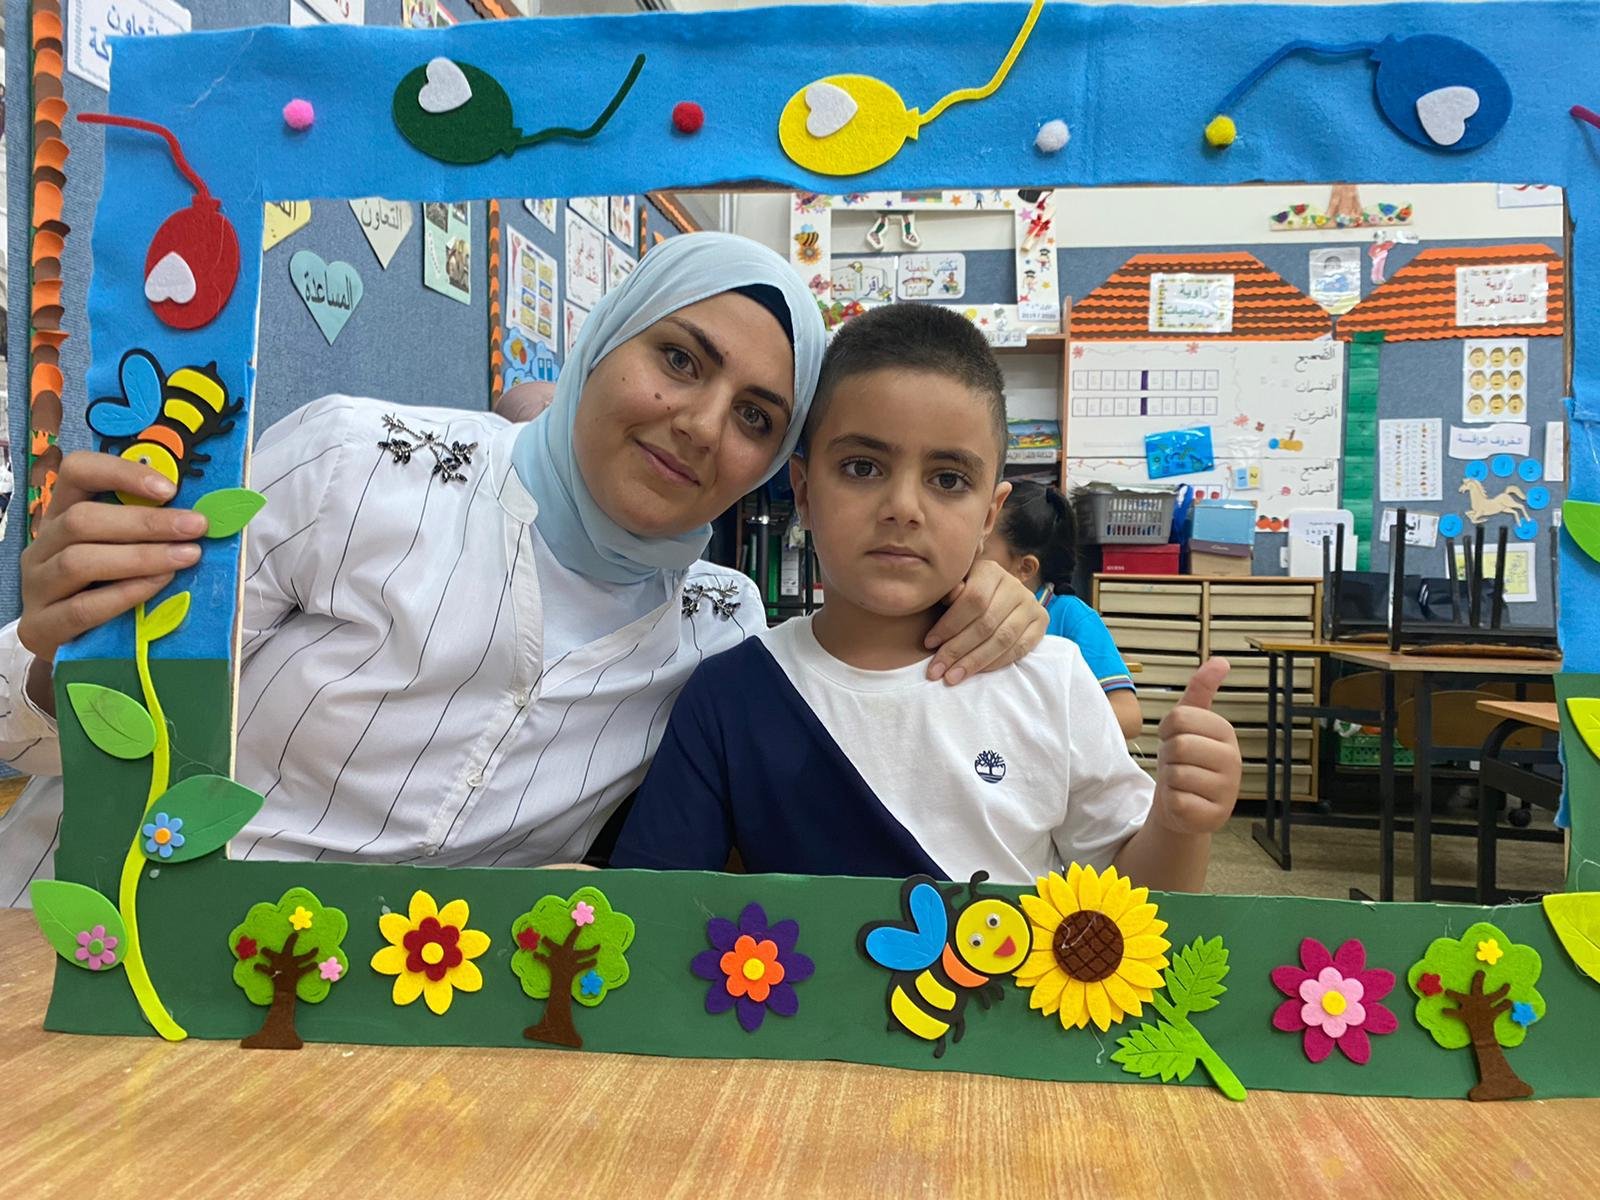 يوم تحضيري بإمتياز يعبقُ نشاطًا، حيويّة ويفوحُ طاقات إيجابية في المدرسة الجماهيرية بئر الأمير-الناصرة-15